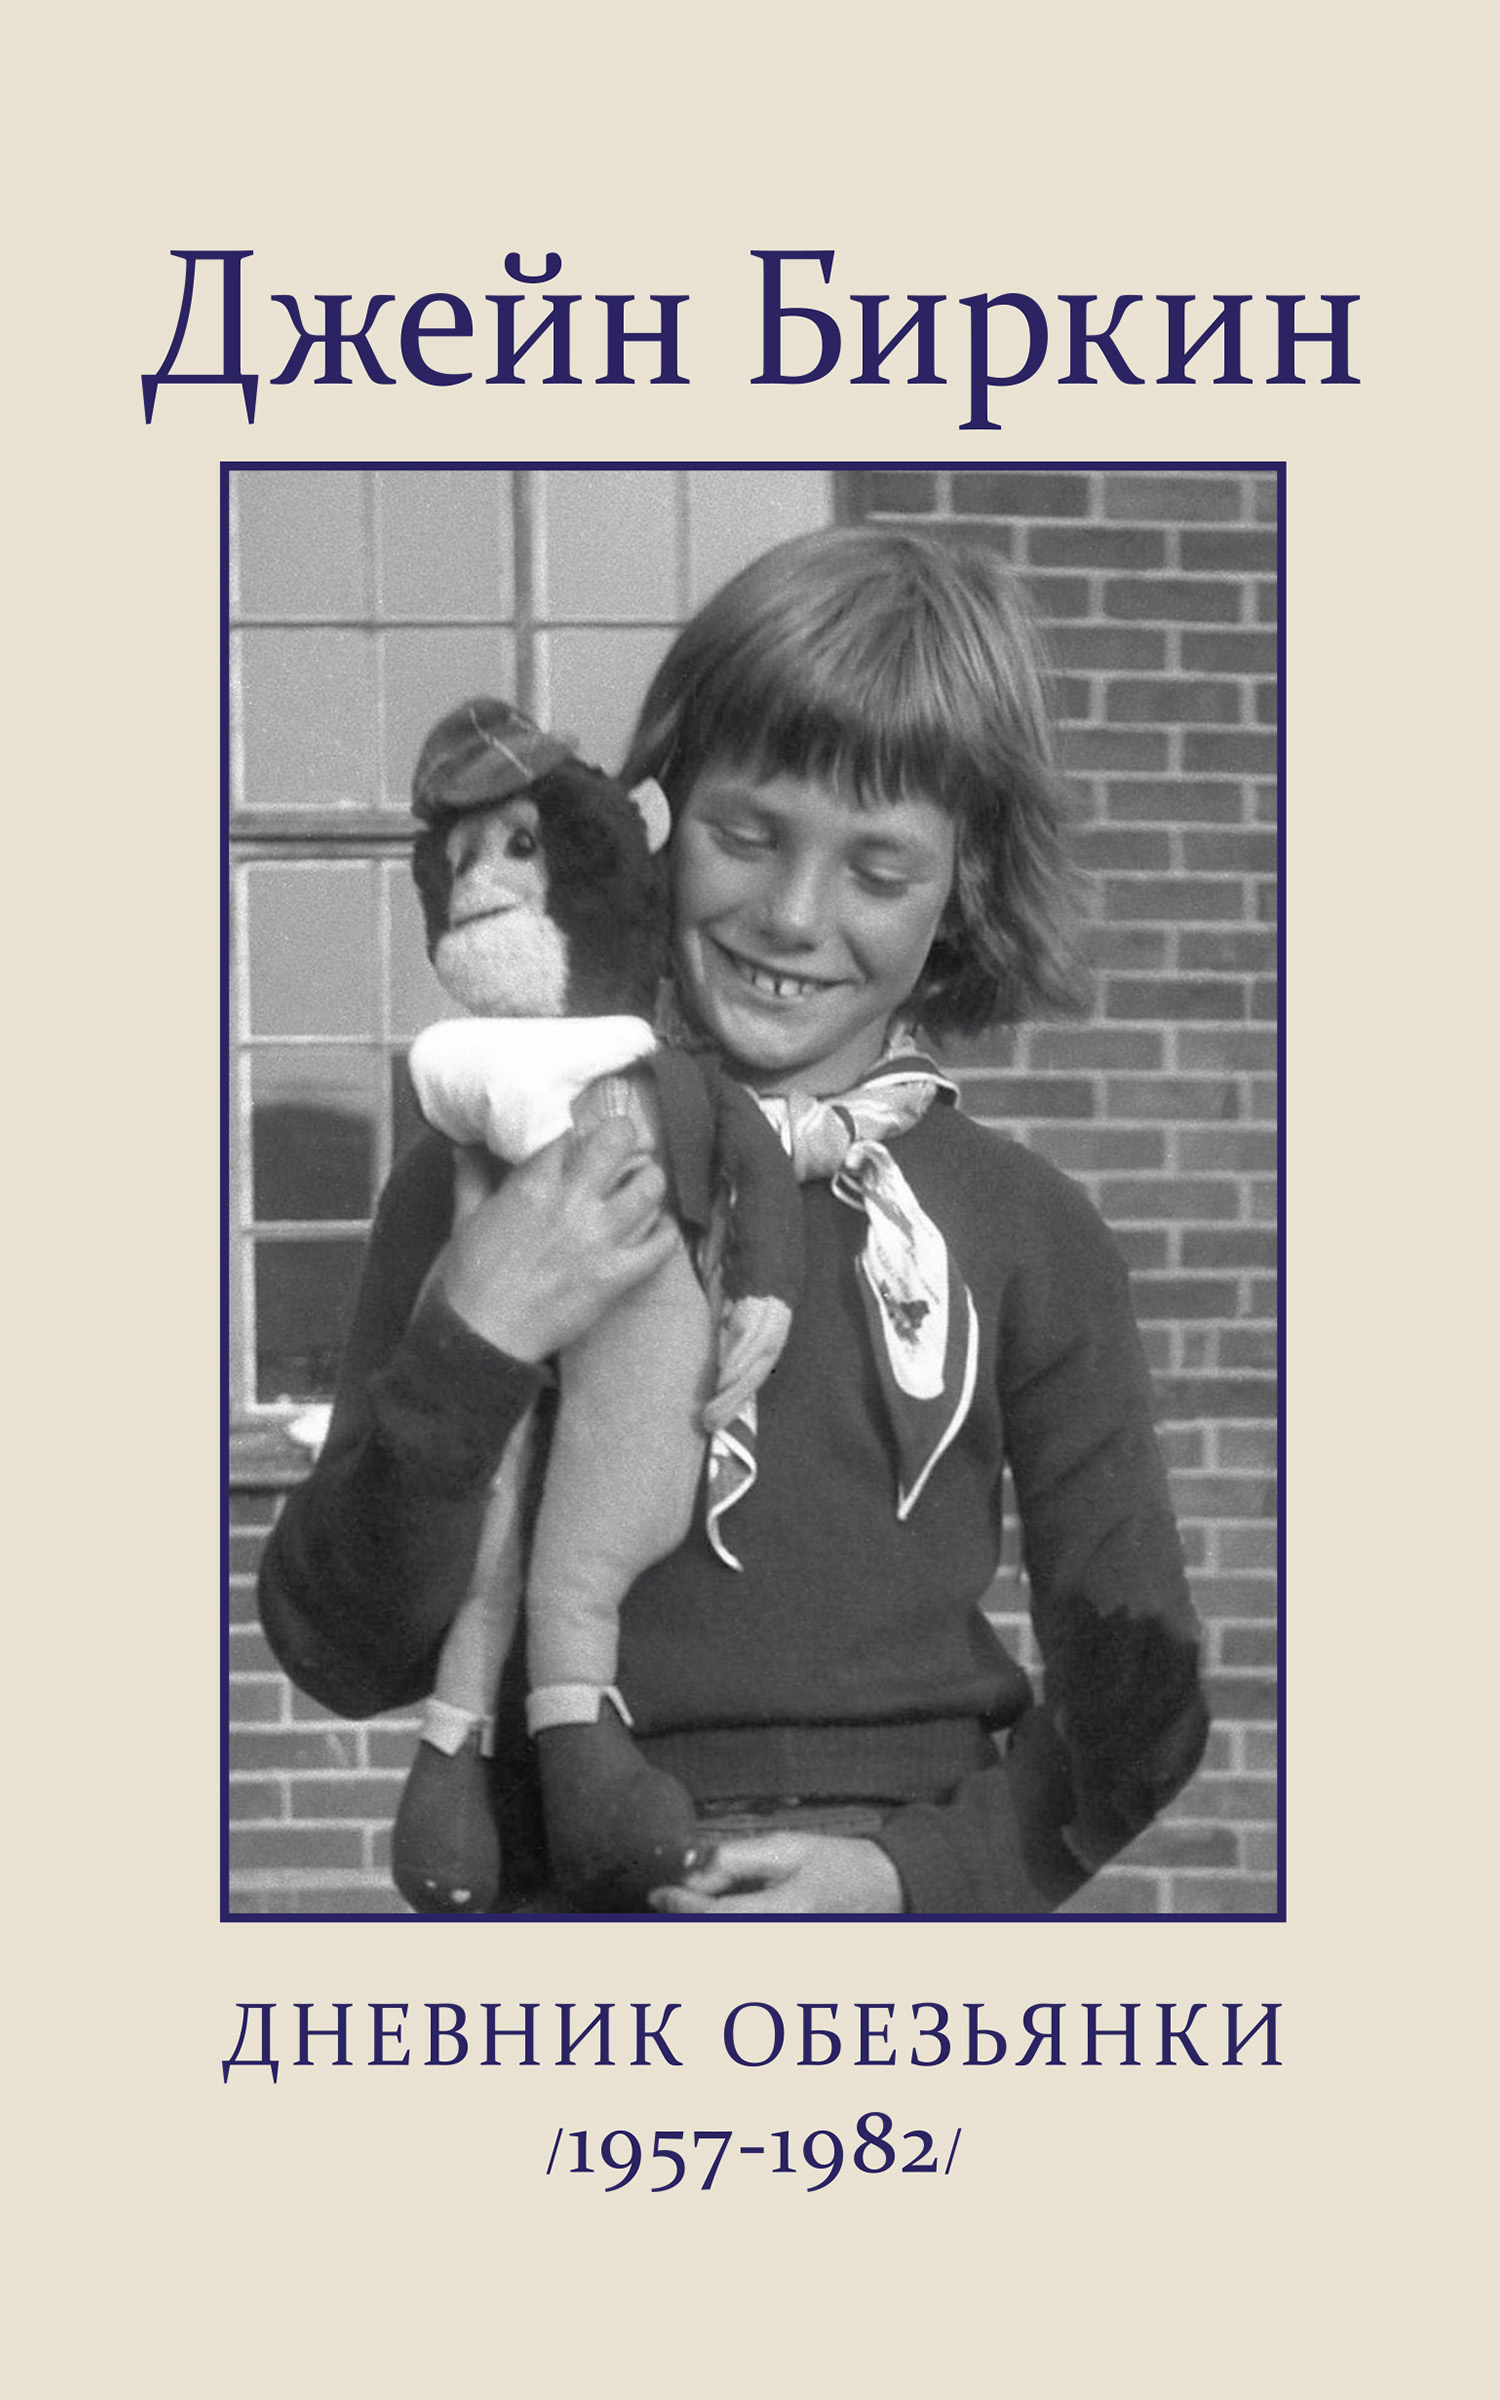 Биркин Джейн - Дневник обезьянки (1957-1982) скачать бесплатно